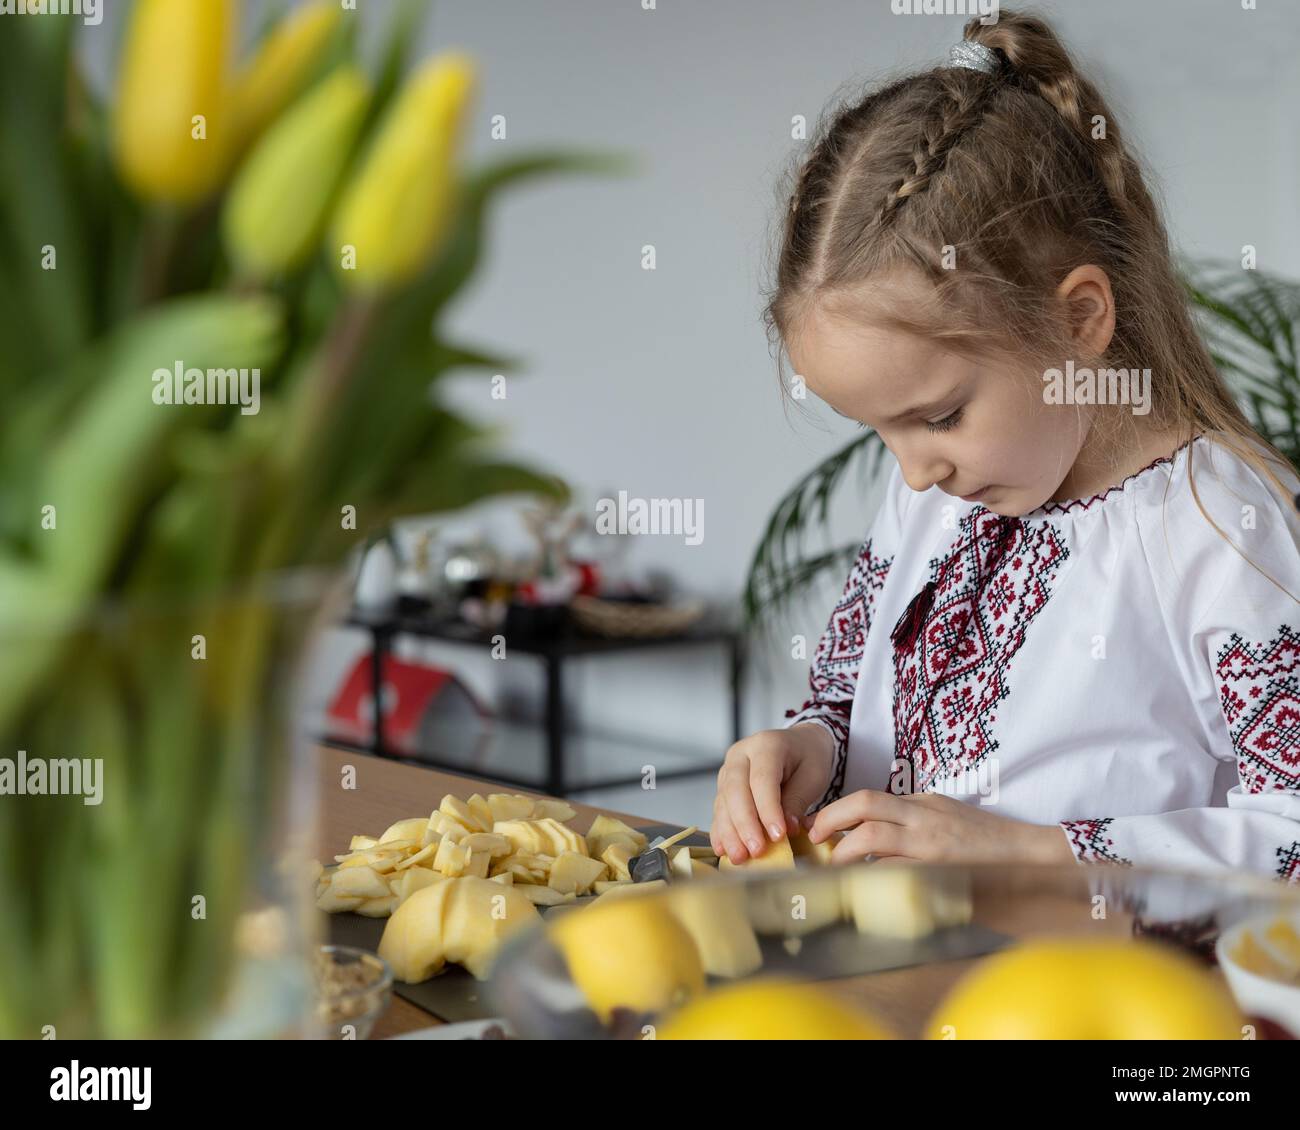 Ein kleines Mädchen mit braunen langen Haaren in einem traditionellen, bestickten Hemd schneidet Äpfel auf dem Tisch, um einen Kuchen zu backen Stockfoto